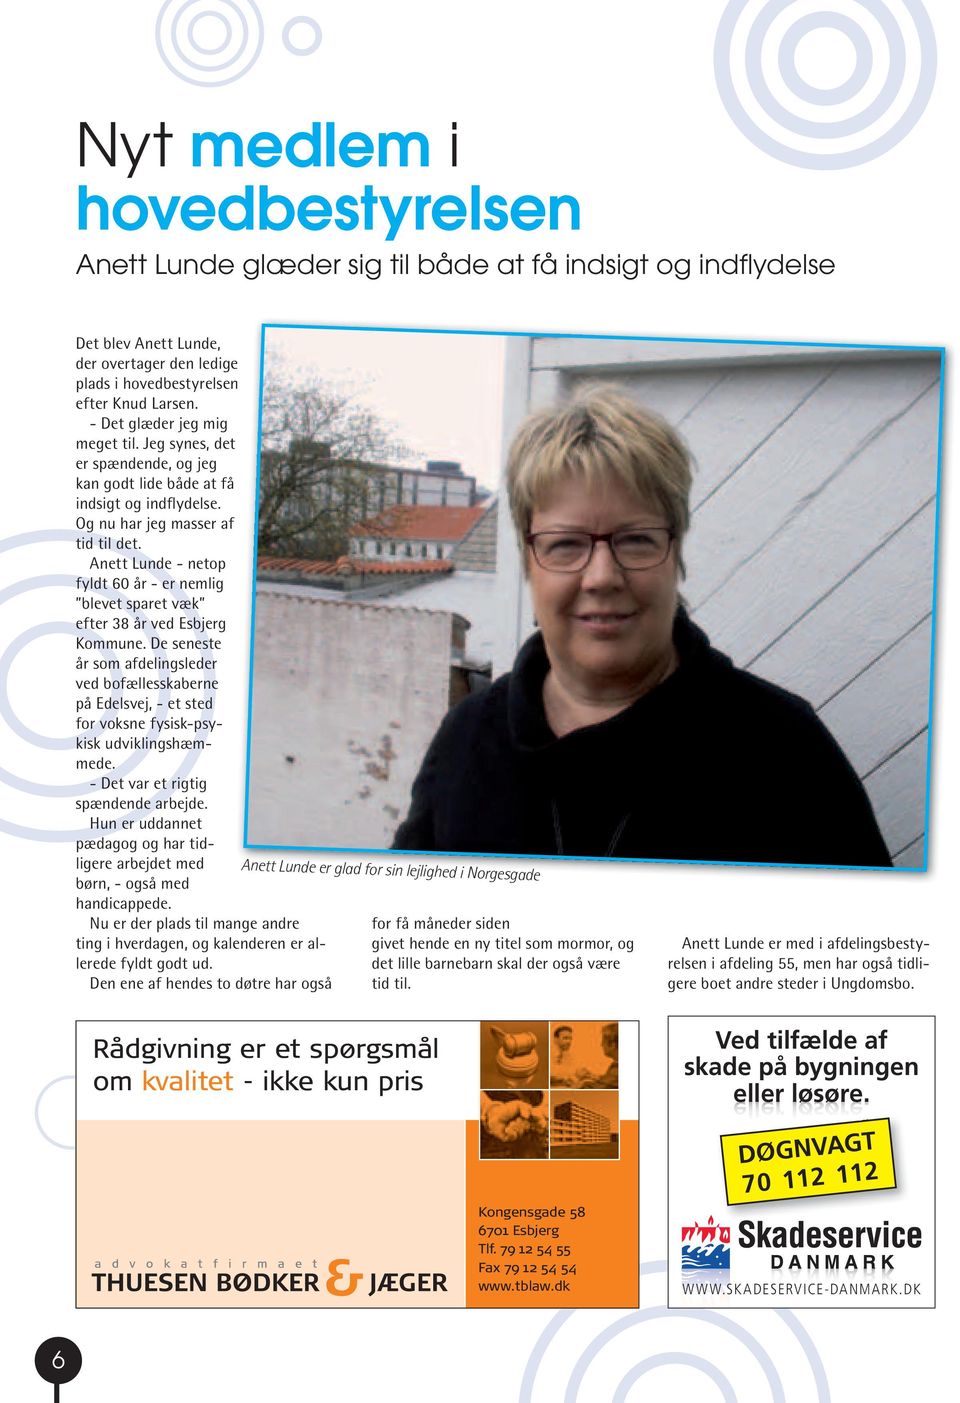 Anett Lunde - netop fyldt 60 år - er nemlig blevet sparet væk efter 38 år ved Esbjerg Kommune.